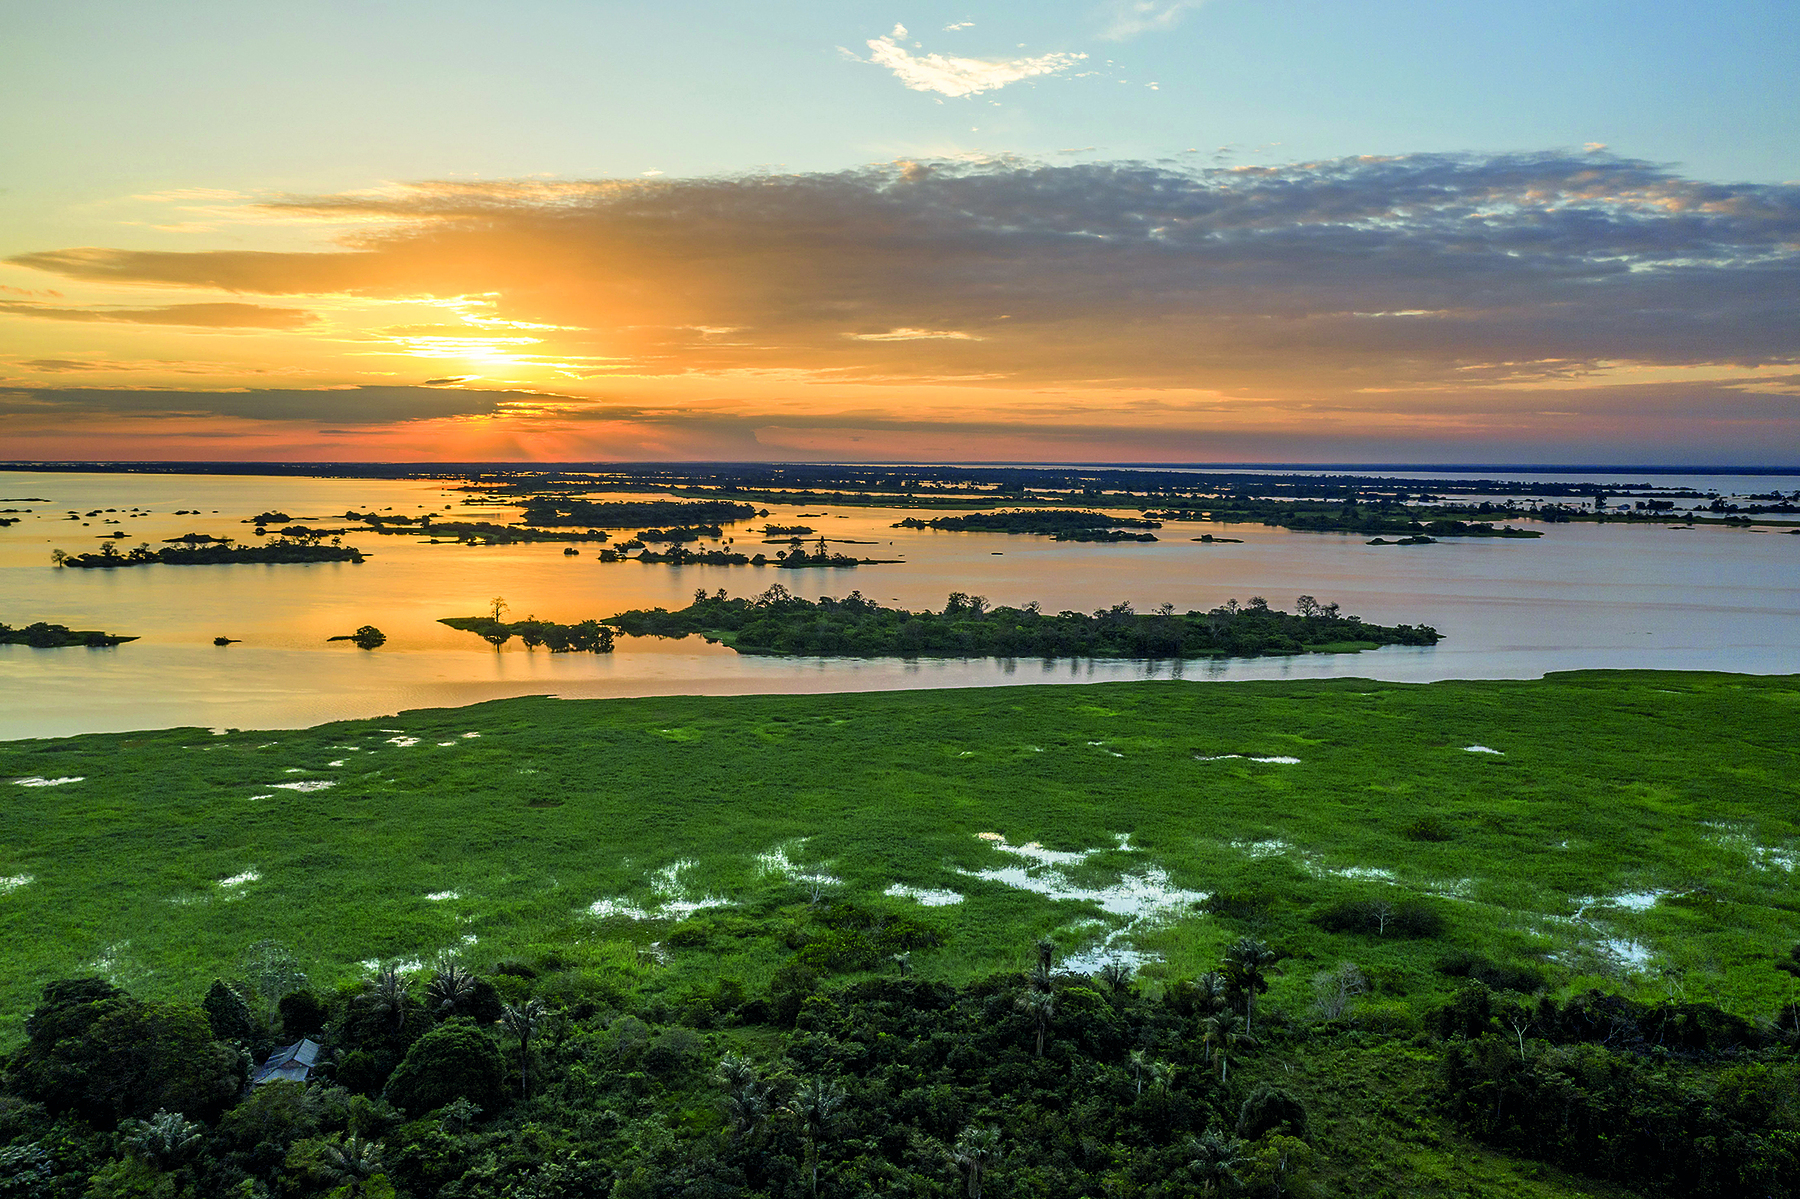 Fotografia. Vista do alto do rio Amazonas. À frente, vegetação e, ao fundo, o rio e o céu com nuvens e pôr do sol alaranjado.